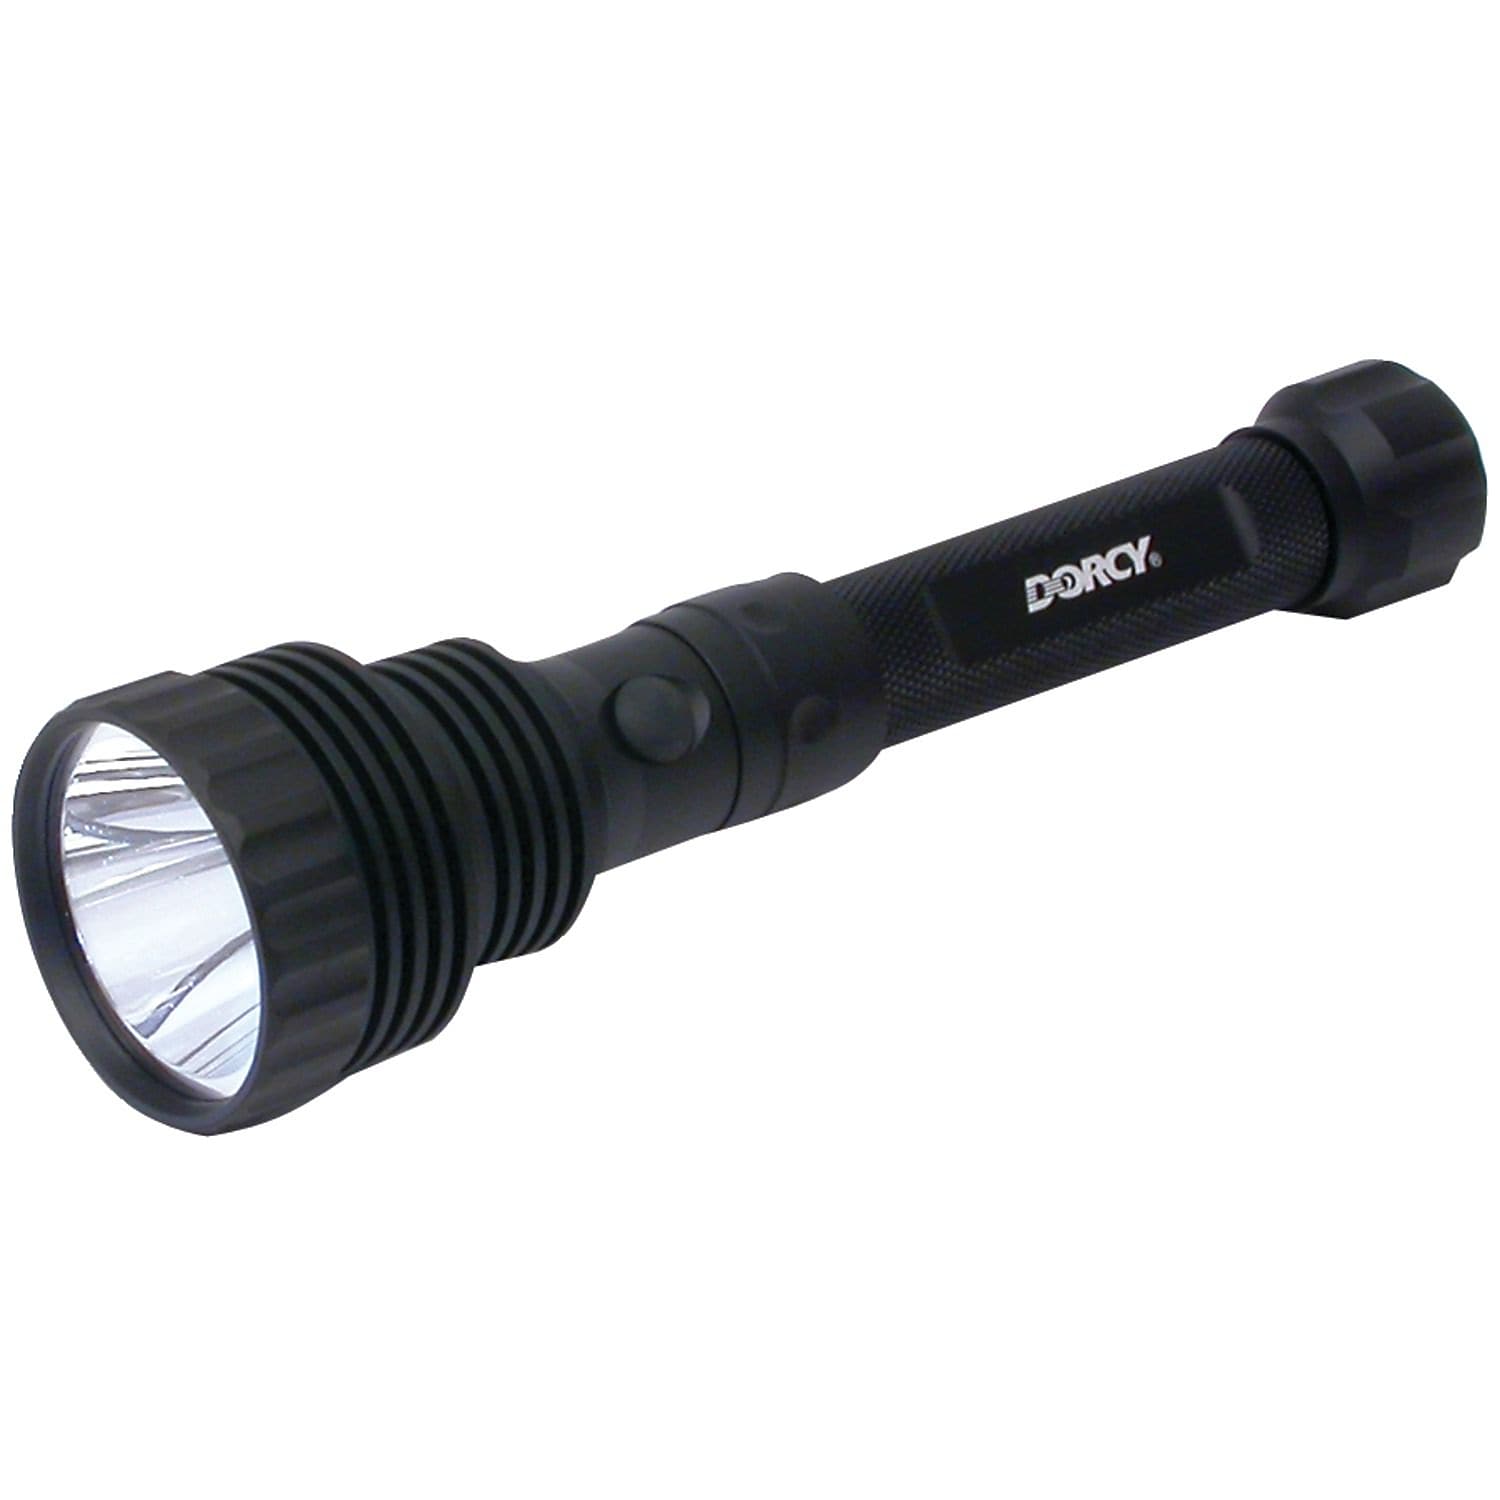 Dorcy LED 1600 Lumen Flashlight and Powerbank - image 1 of 7